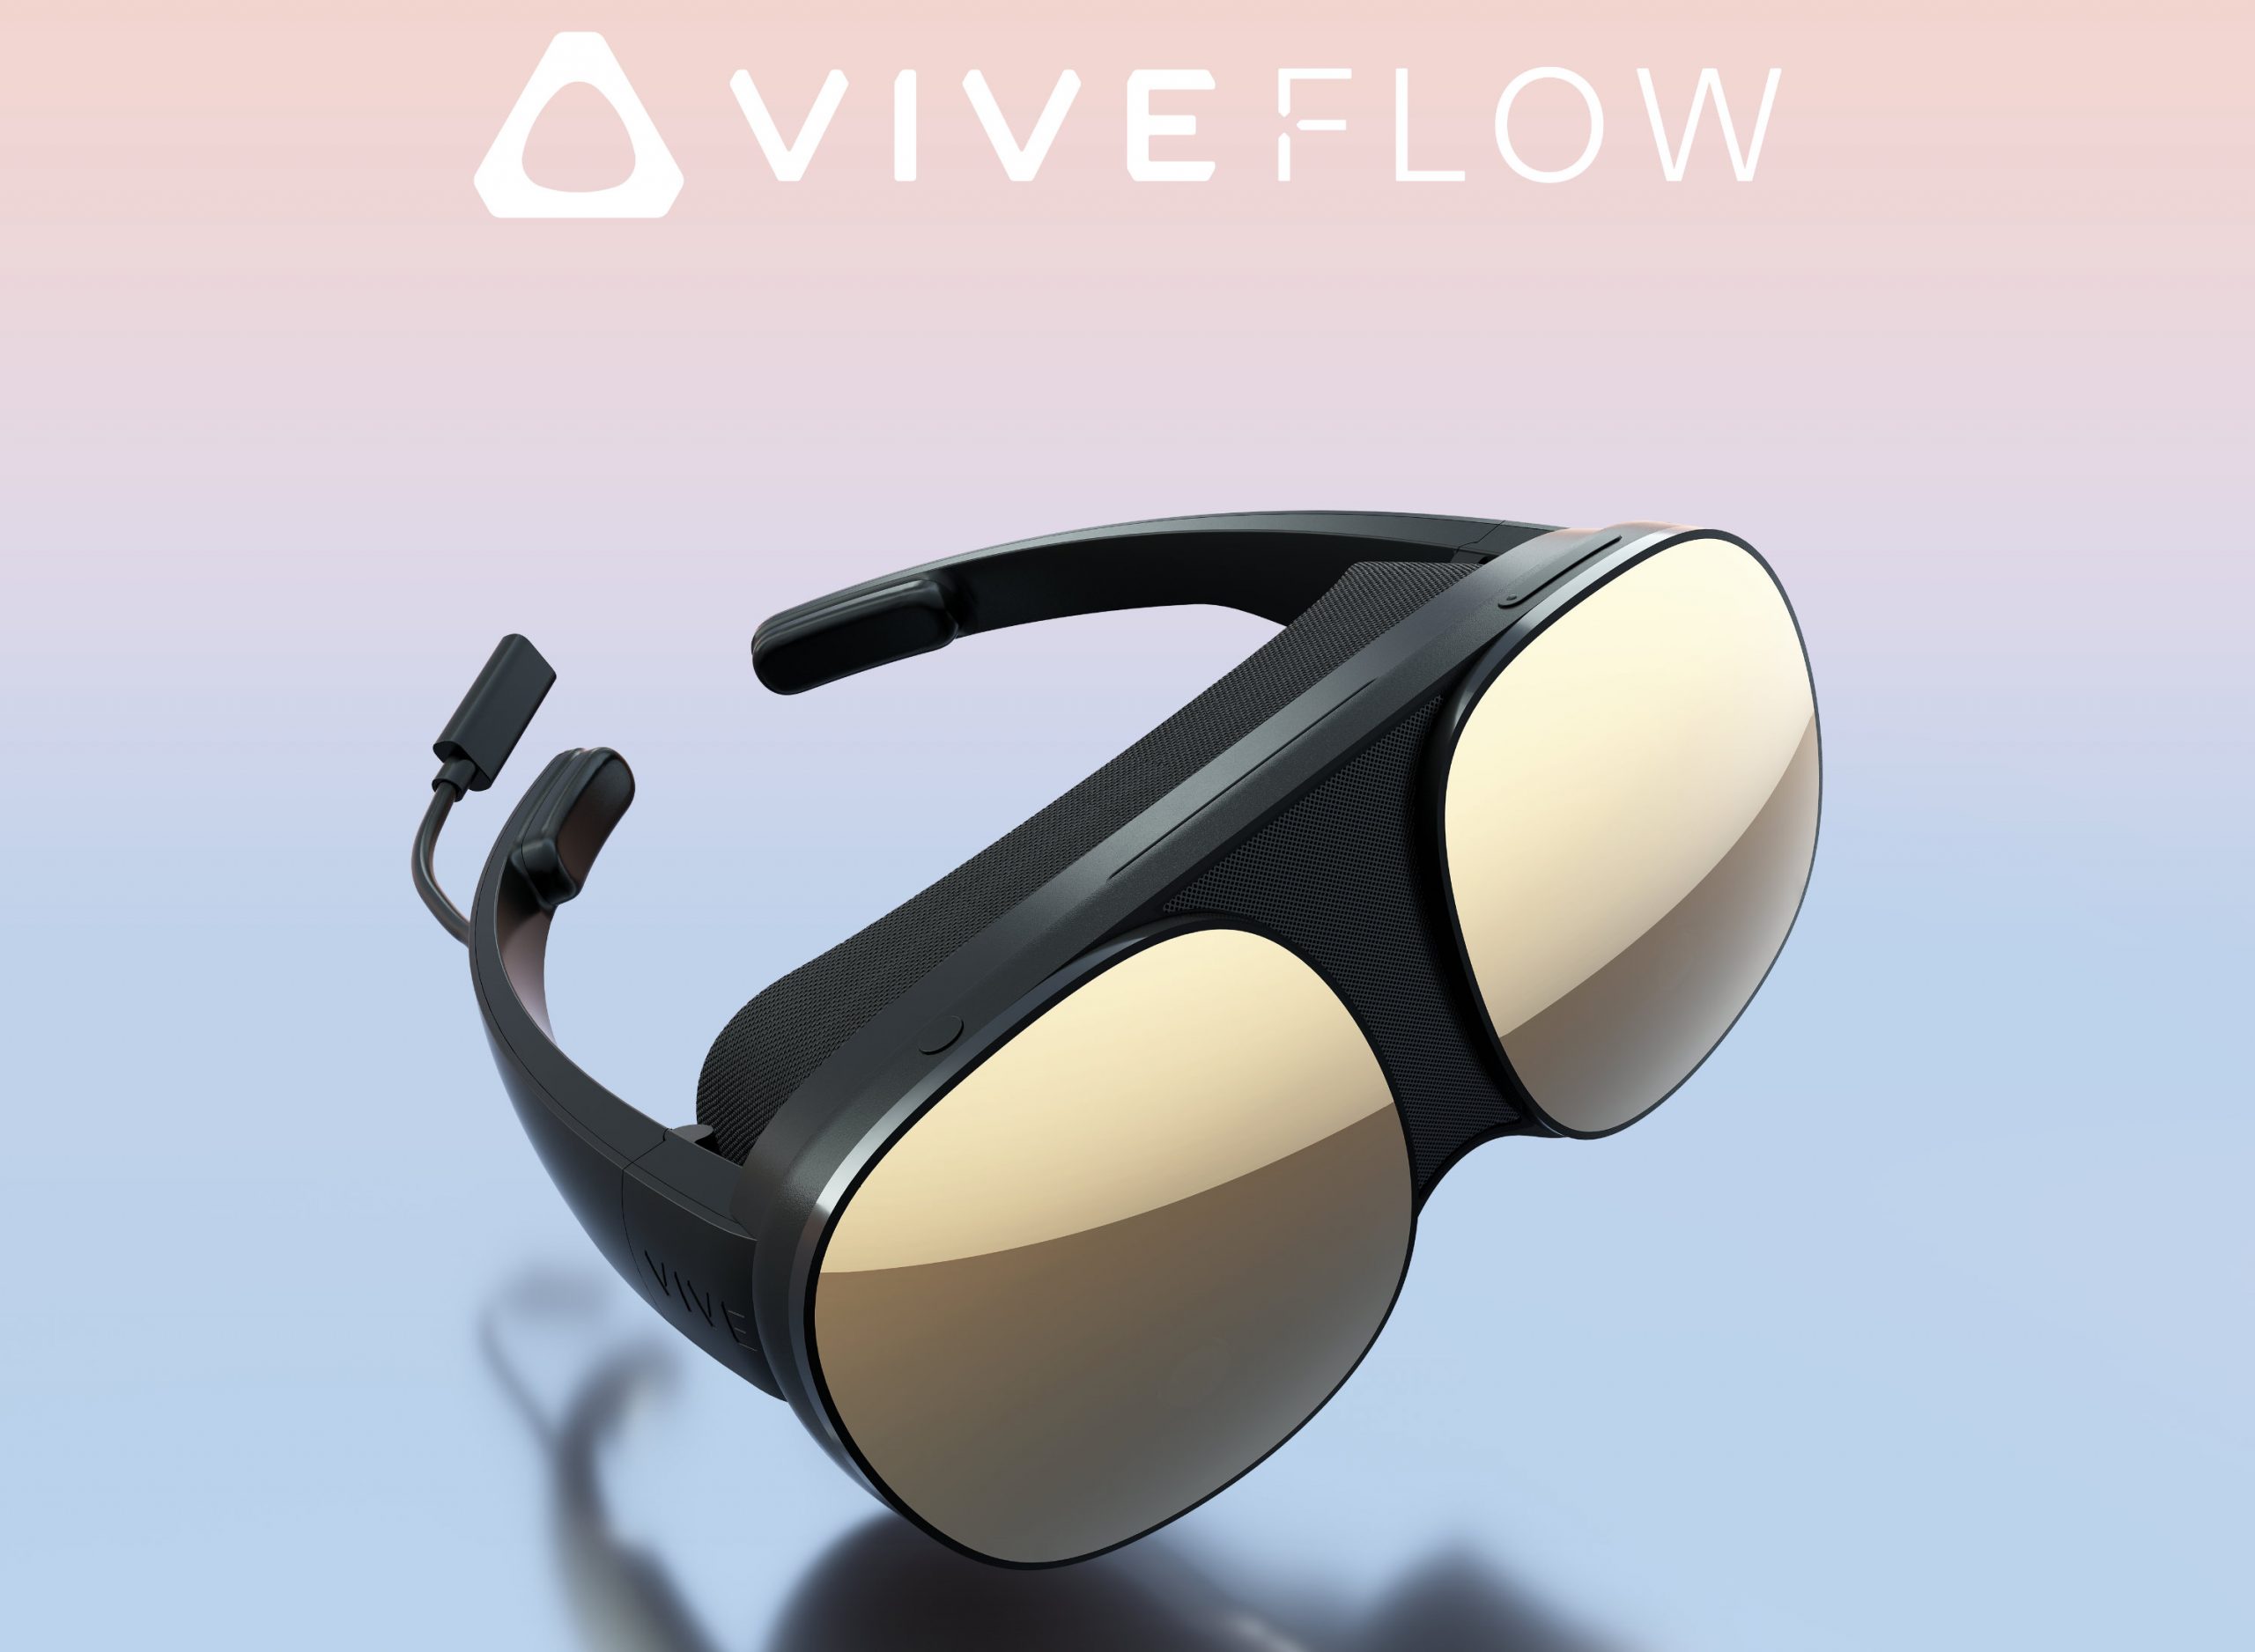 Vr htc htc vive flow. HTC VR Vive Flow. Vive Flow очки виртуальной реальности модели 2q7y100. HTC HTC Vive Flow. HTC ces 2023 новая VR-гарнитура Vive Flow.